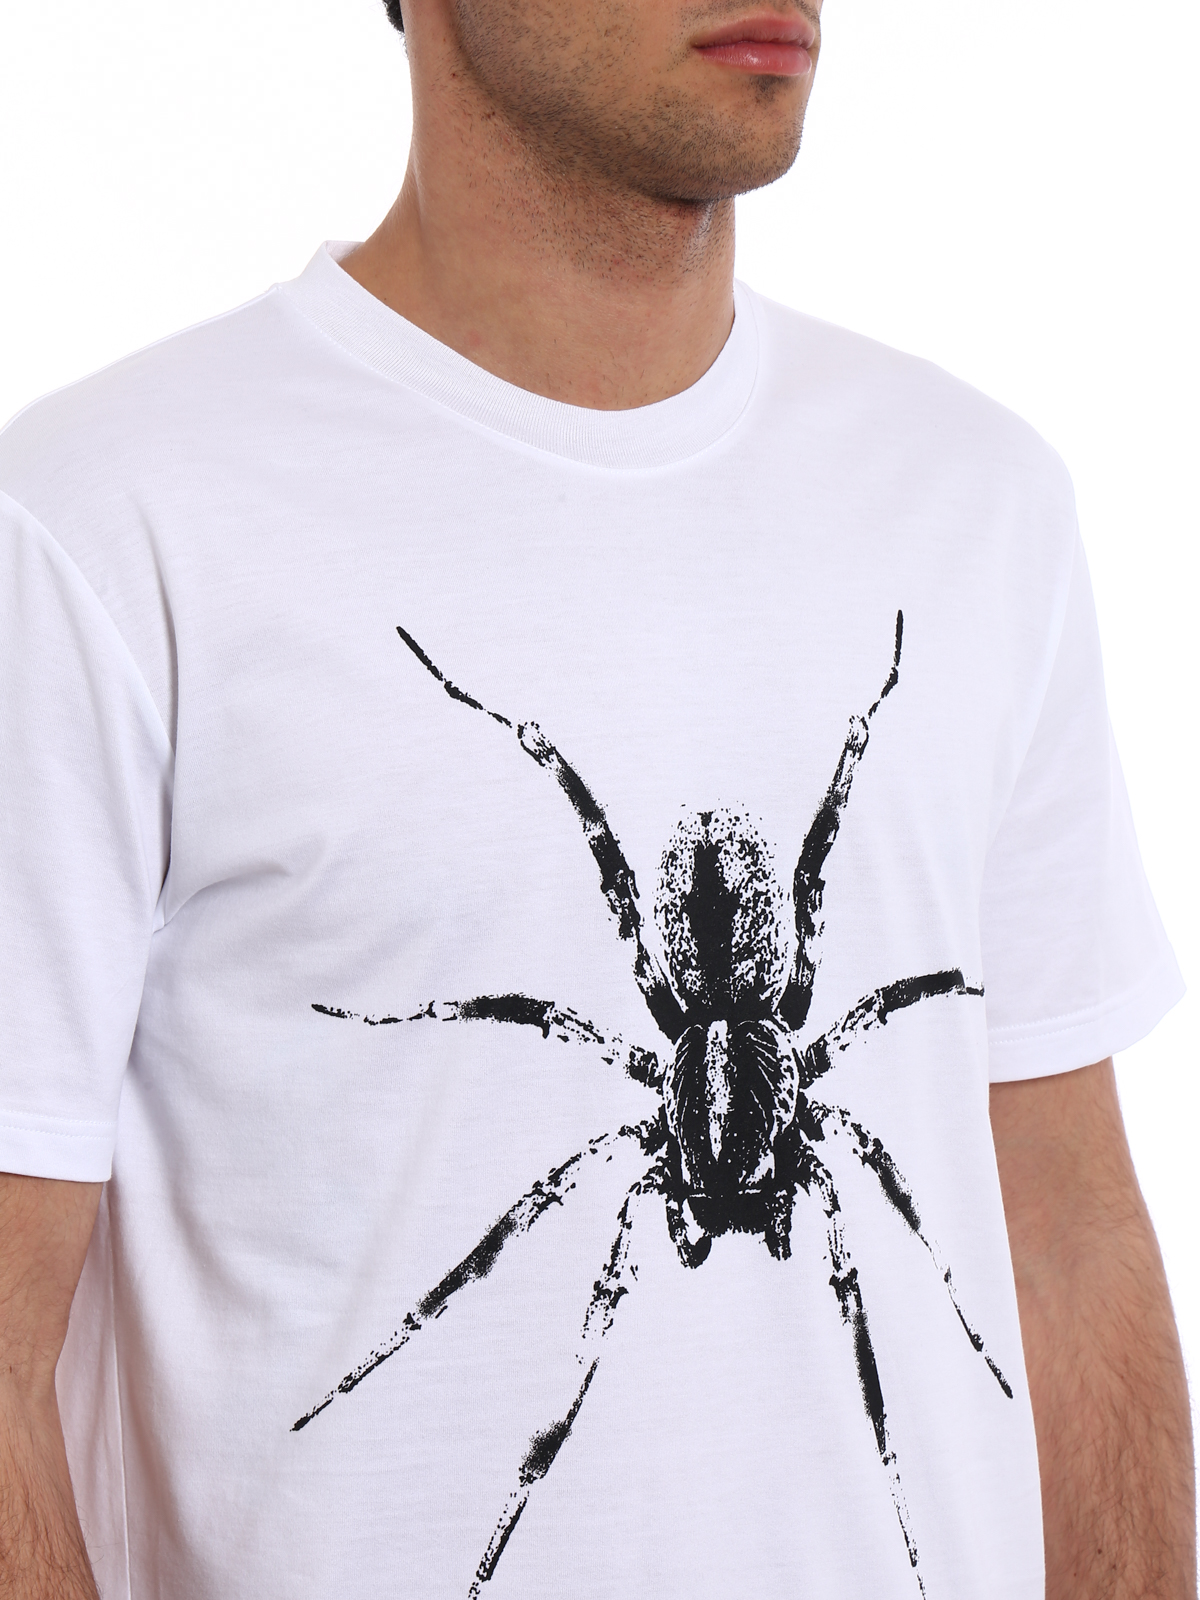 T-shirts Lanvin - Spider print white T-shirt - RMJE0062A170 | iKRIX.com